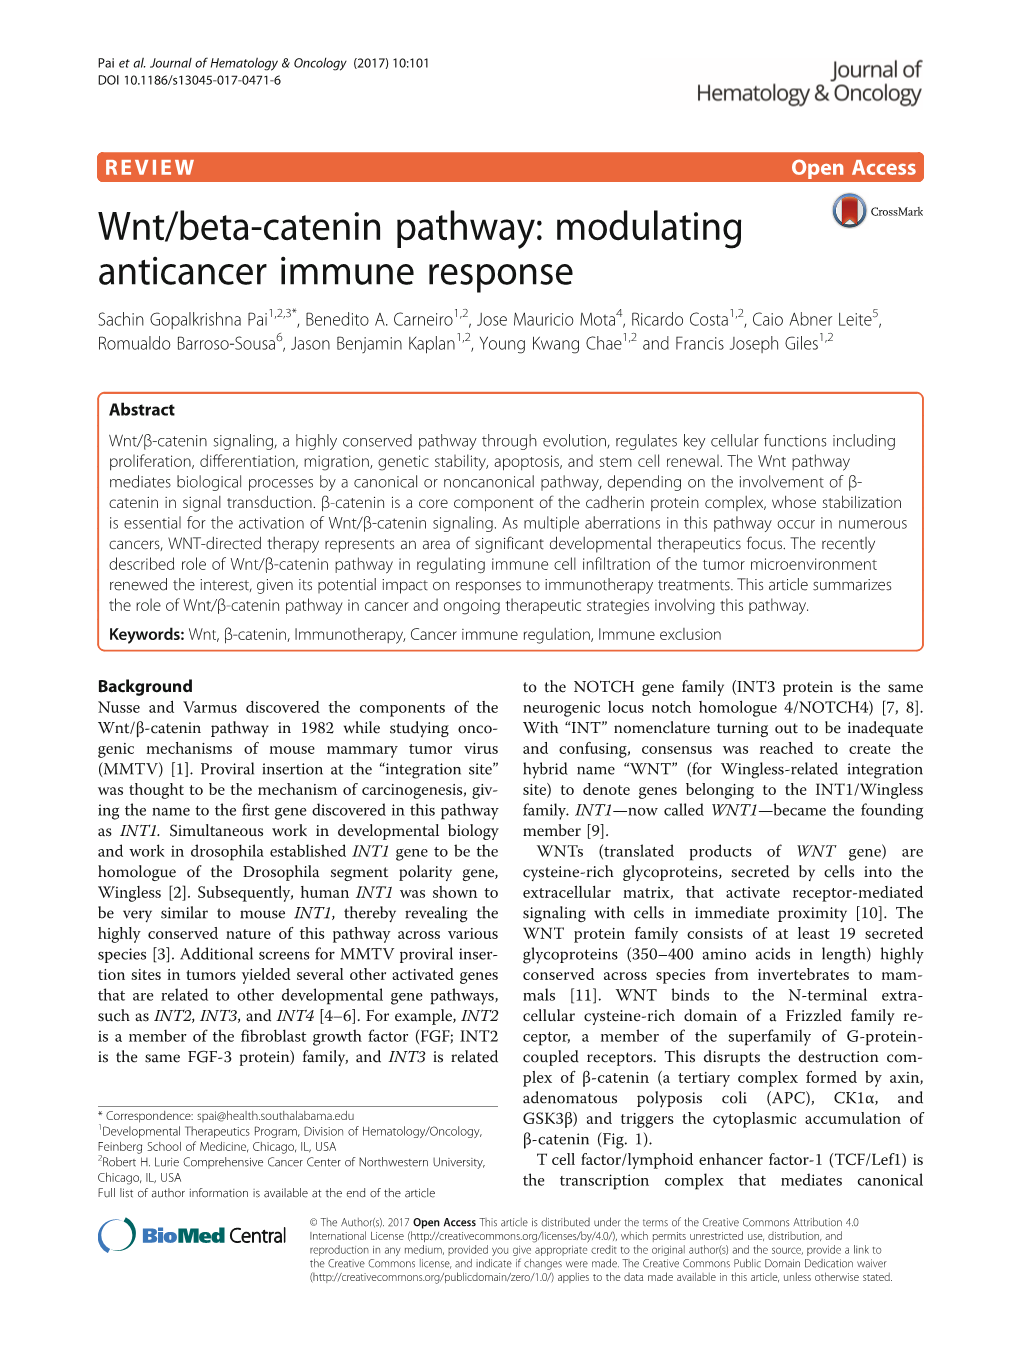 Wnt/Beta-Catenin Pathway: Modulating Anticancer Immune Response Sachin Gopalkrishna Pai1,2,3*, Benedito A